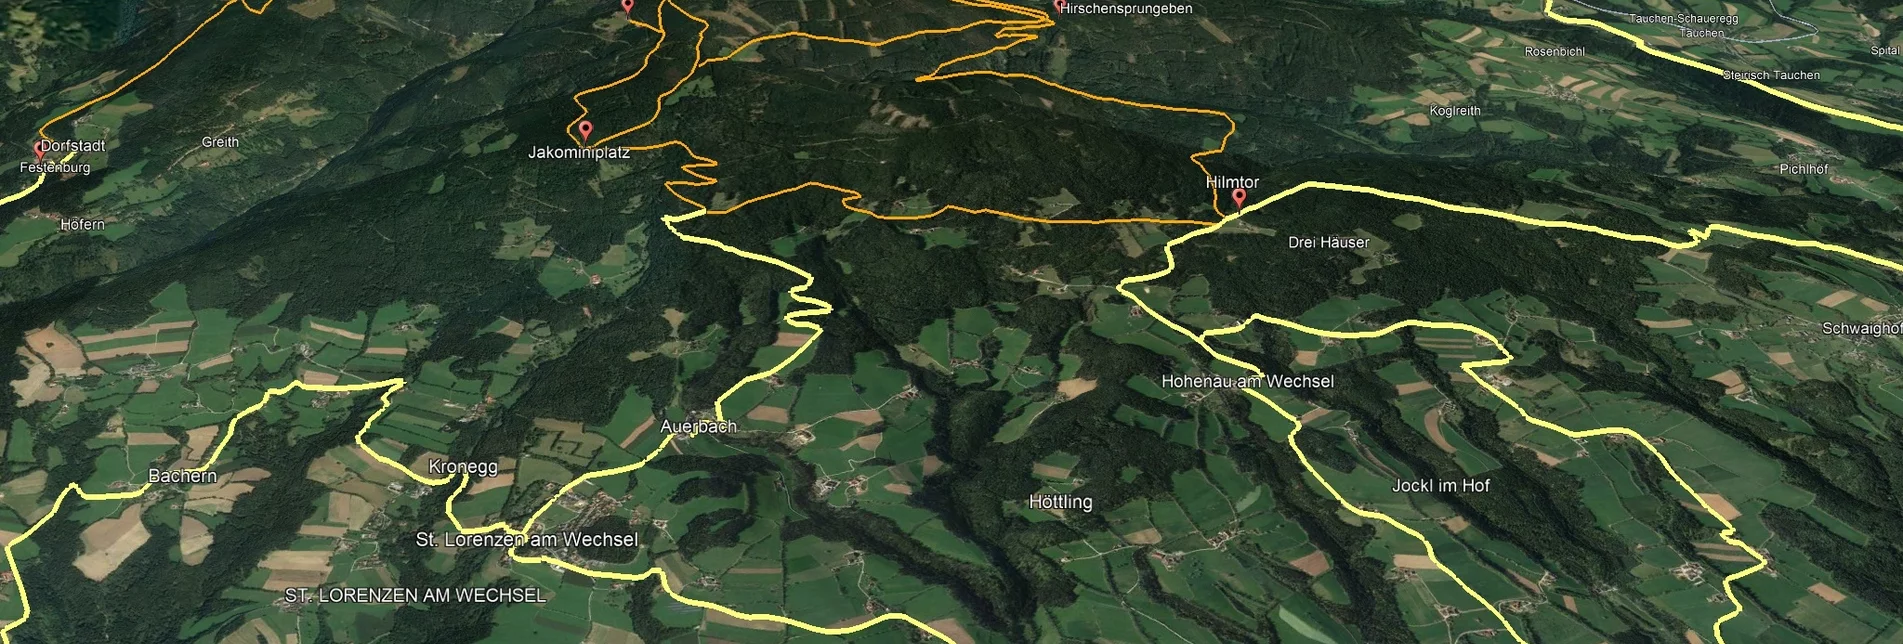 Mountainbike Steirische Wexl Trails - Jakominiweg Route - Touren-Impression #1 | © Verein Tourismusentwicklung Steirischer Wechsel